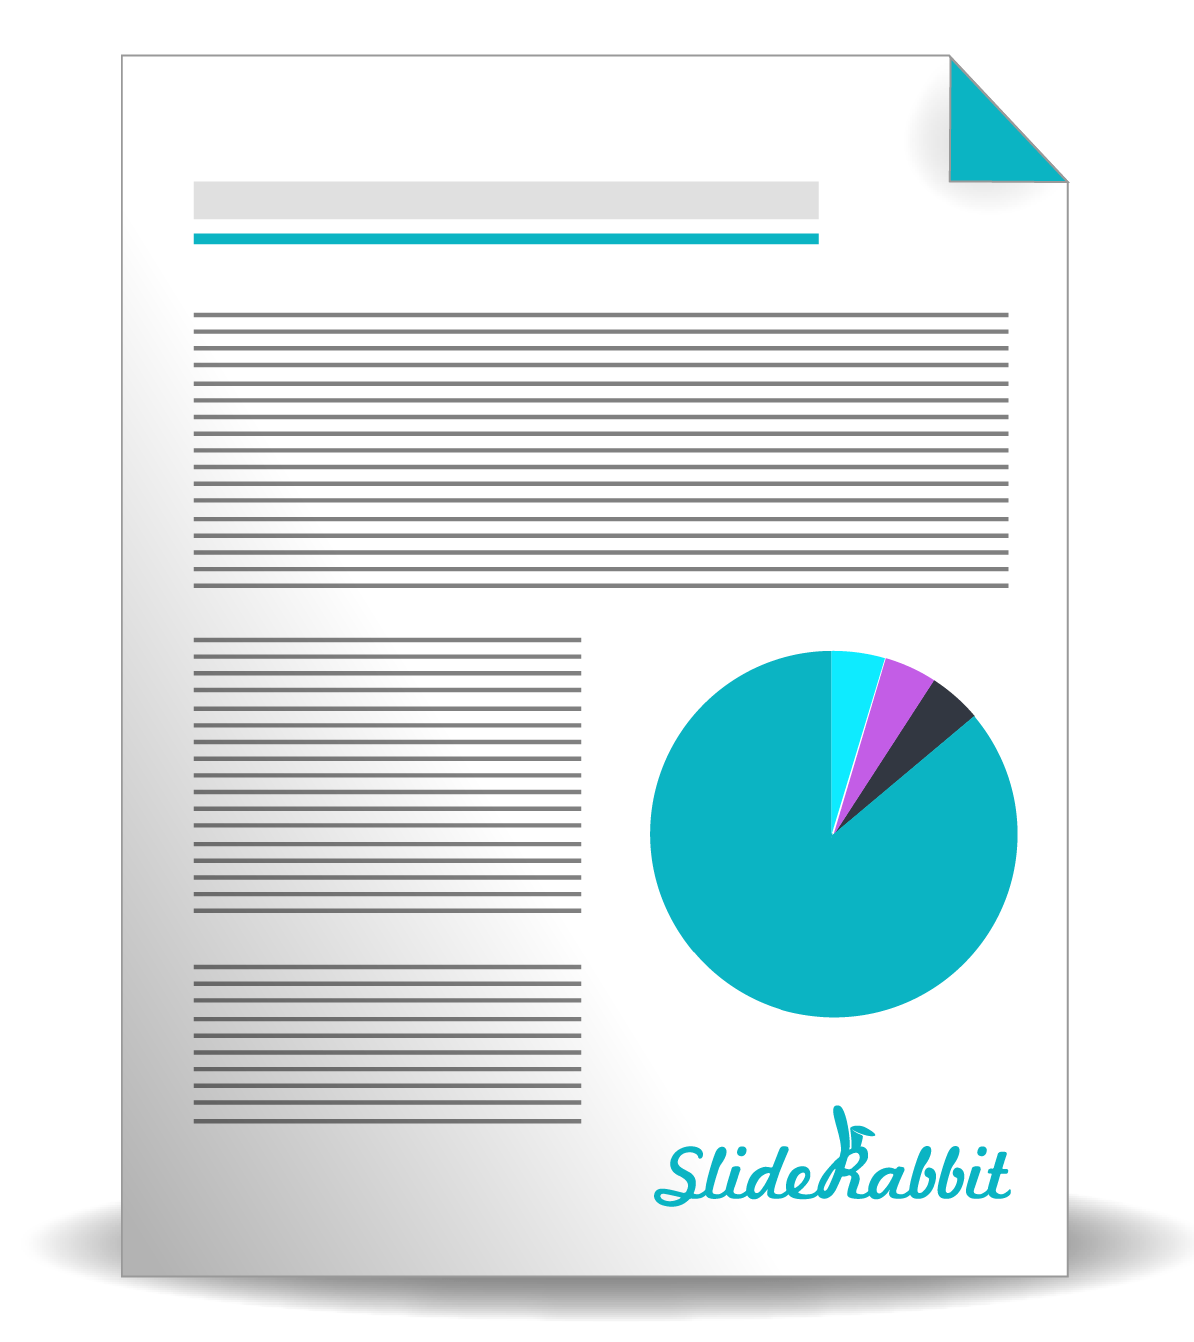 Presentation_Software_SlideRabbit_VisualSugar_PresentationDesign_Powerpoint